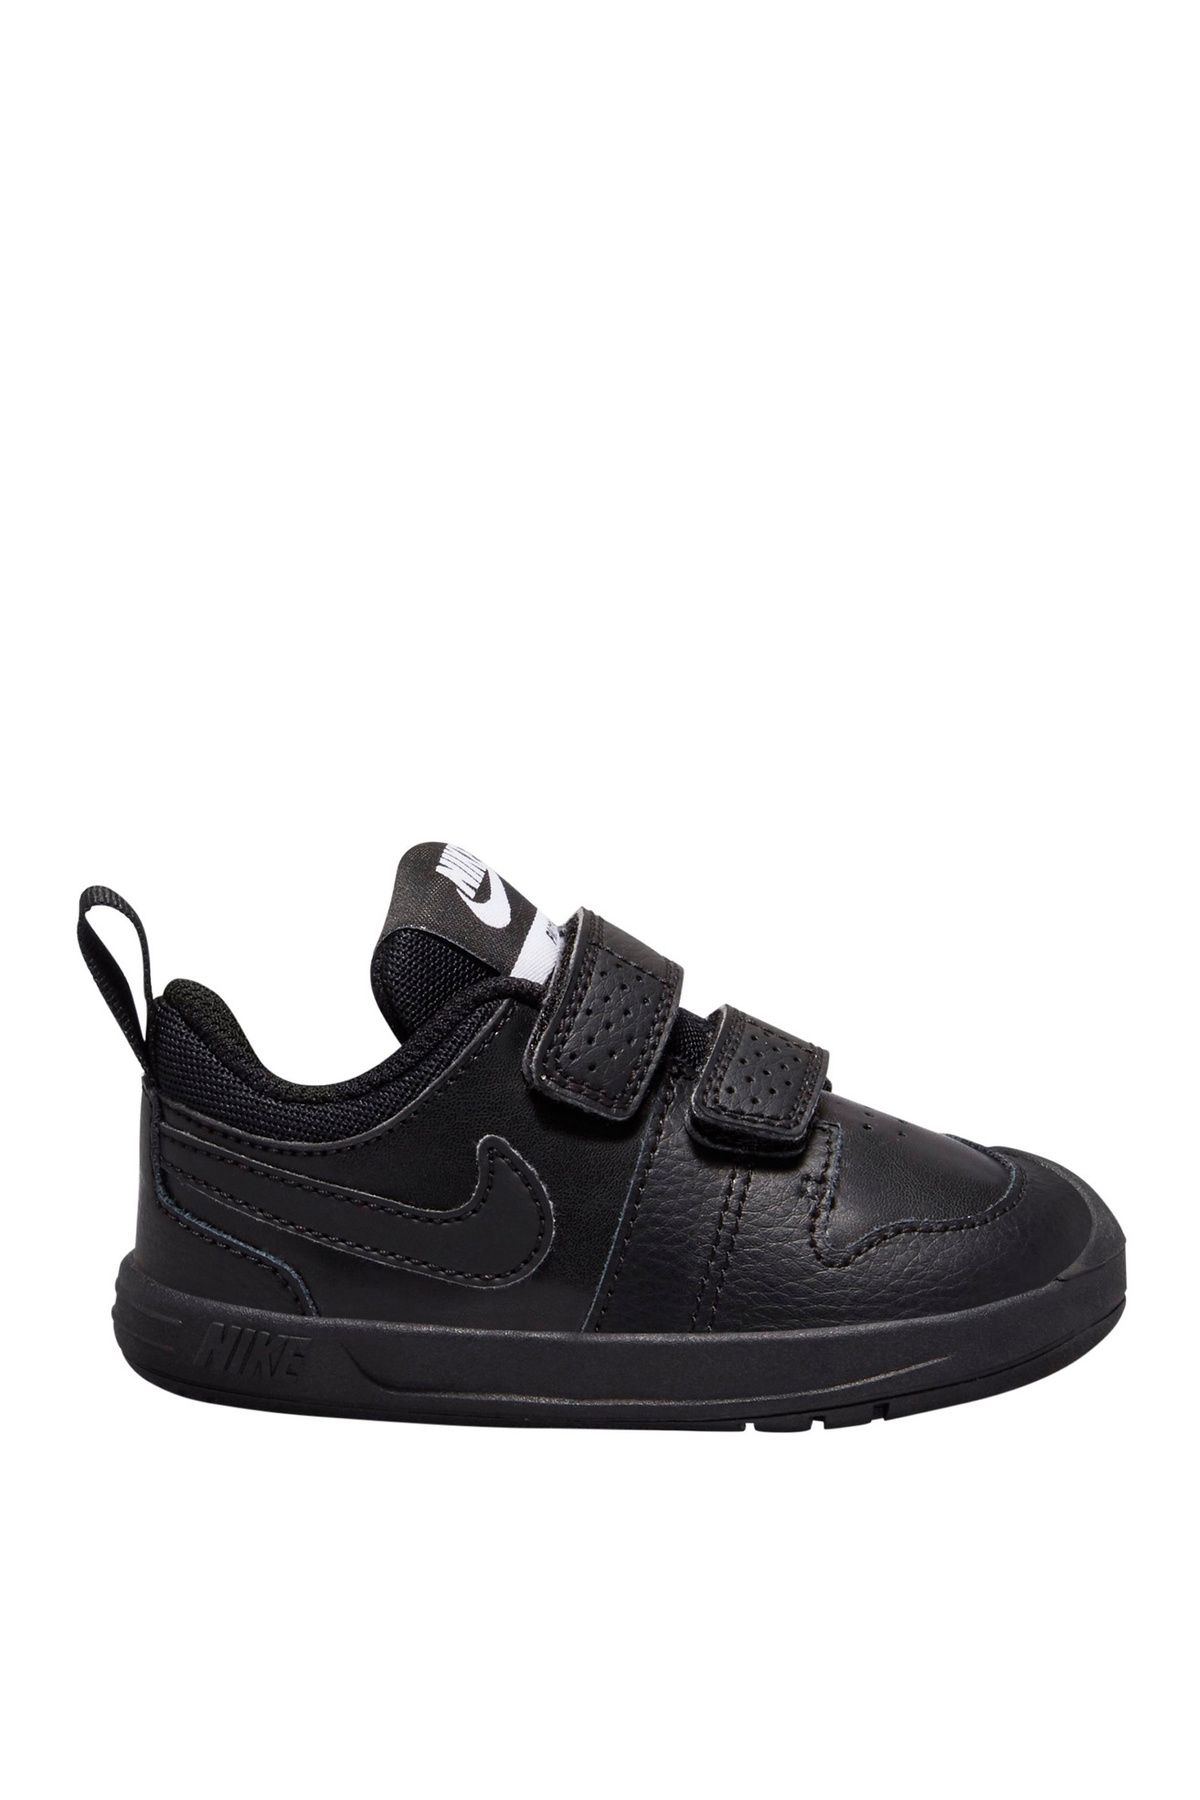 Nike Bebek Siyah Yürüyüş Ayakkabısı AR4162-001 NIKE PICO 5 (TDV)